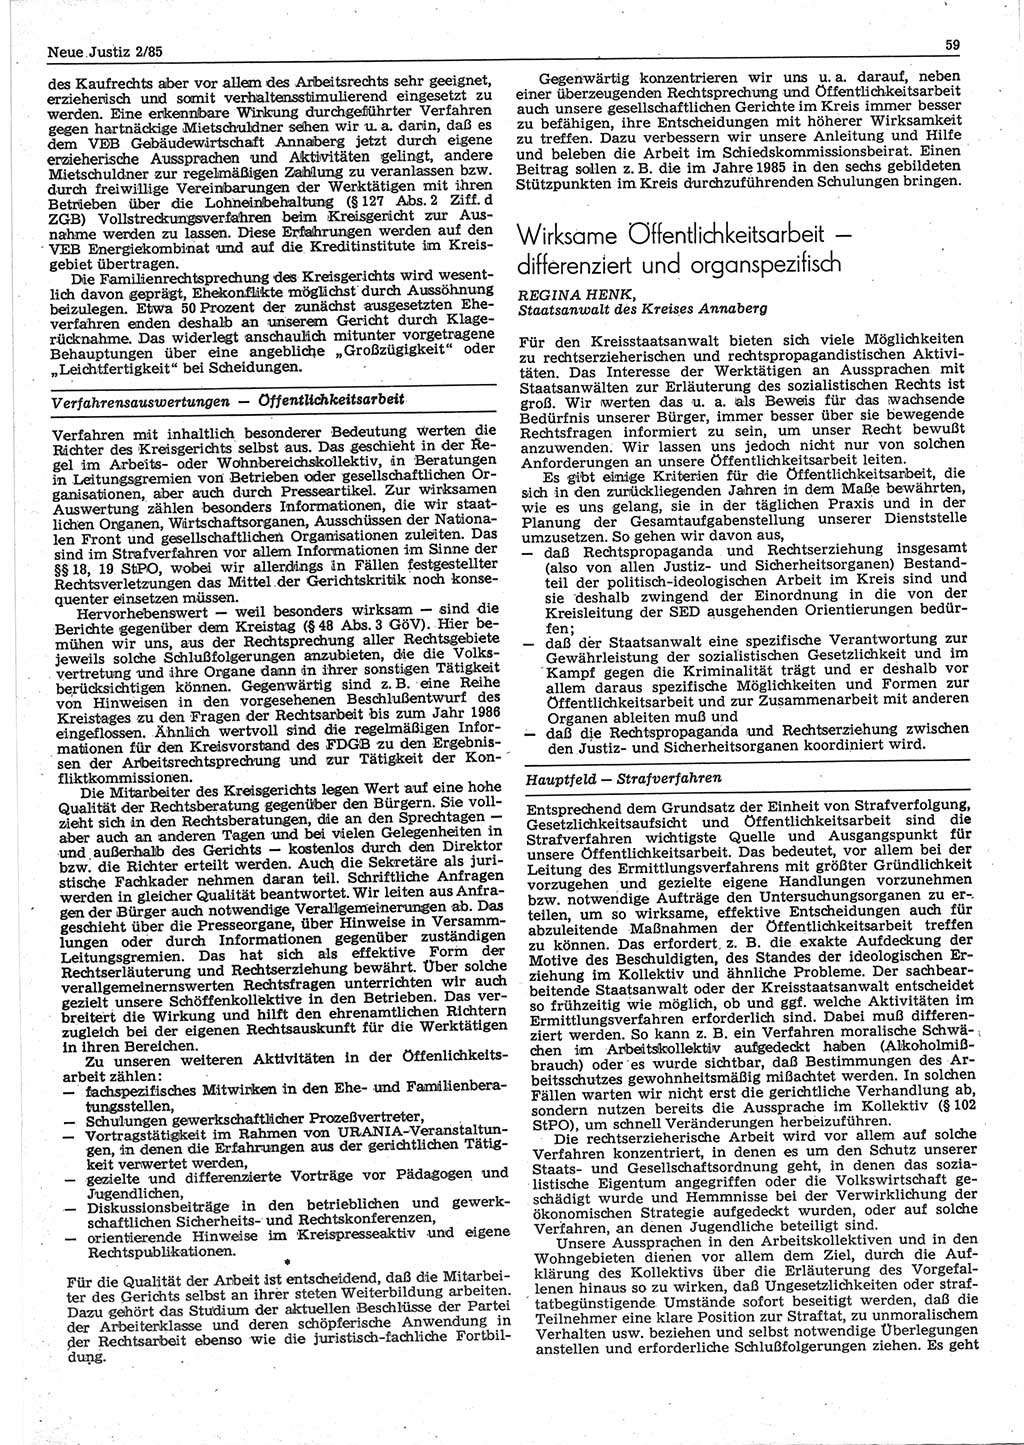 Neue Justiz (NJ), Zeitschrift für sozialistisches Recht und Gesetzlichkeit [Deutsche Demokratische Republik (DDR)], 39. Jahrgang 1985, Seite 59 (NJ DDR 1985, S. 59)